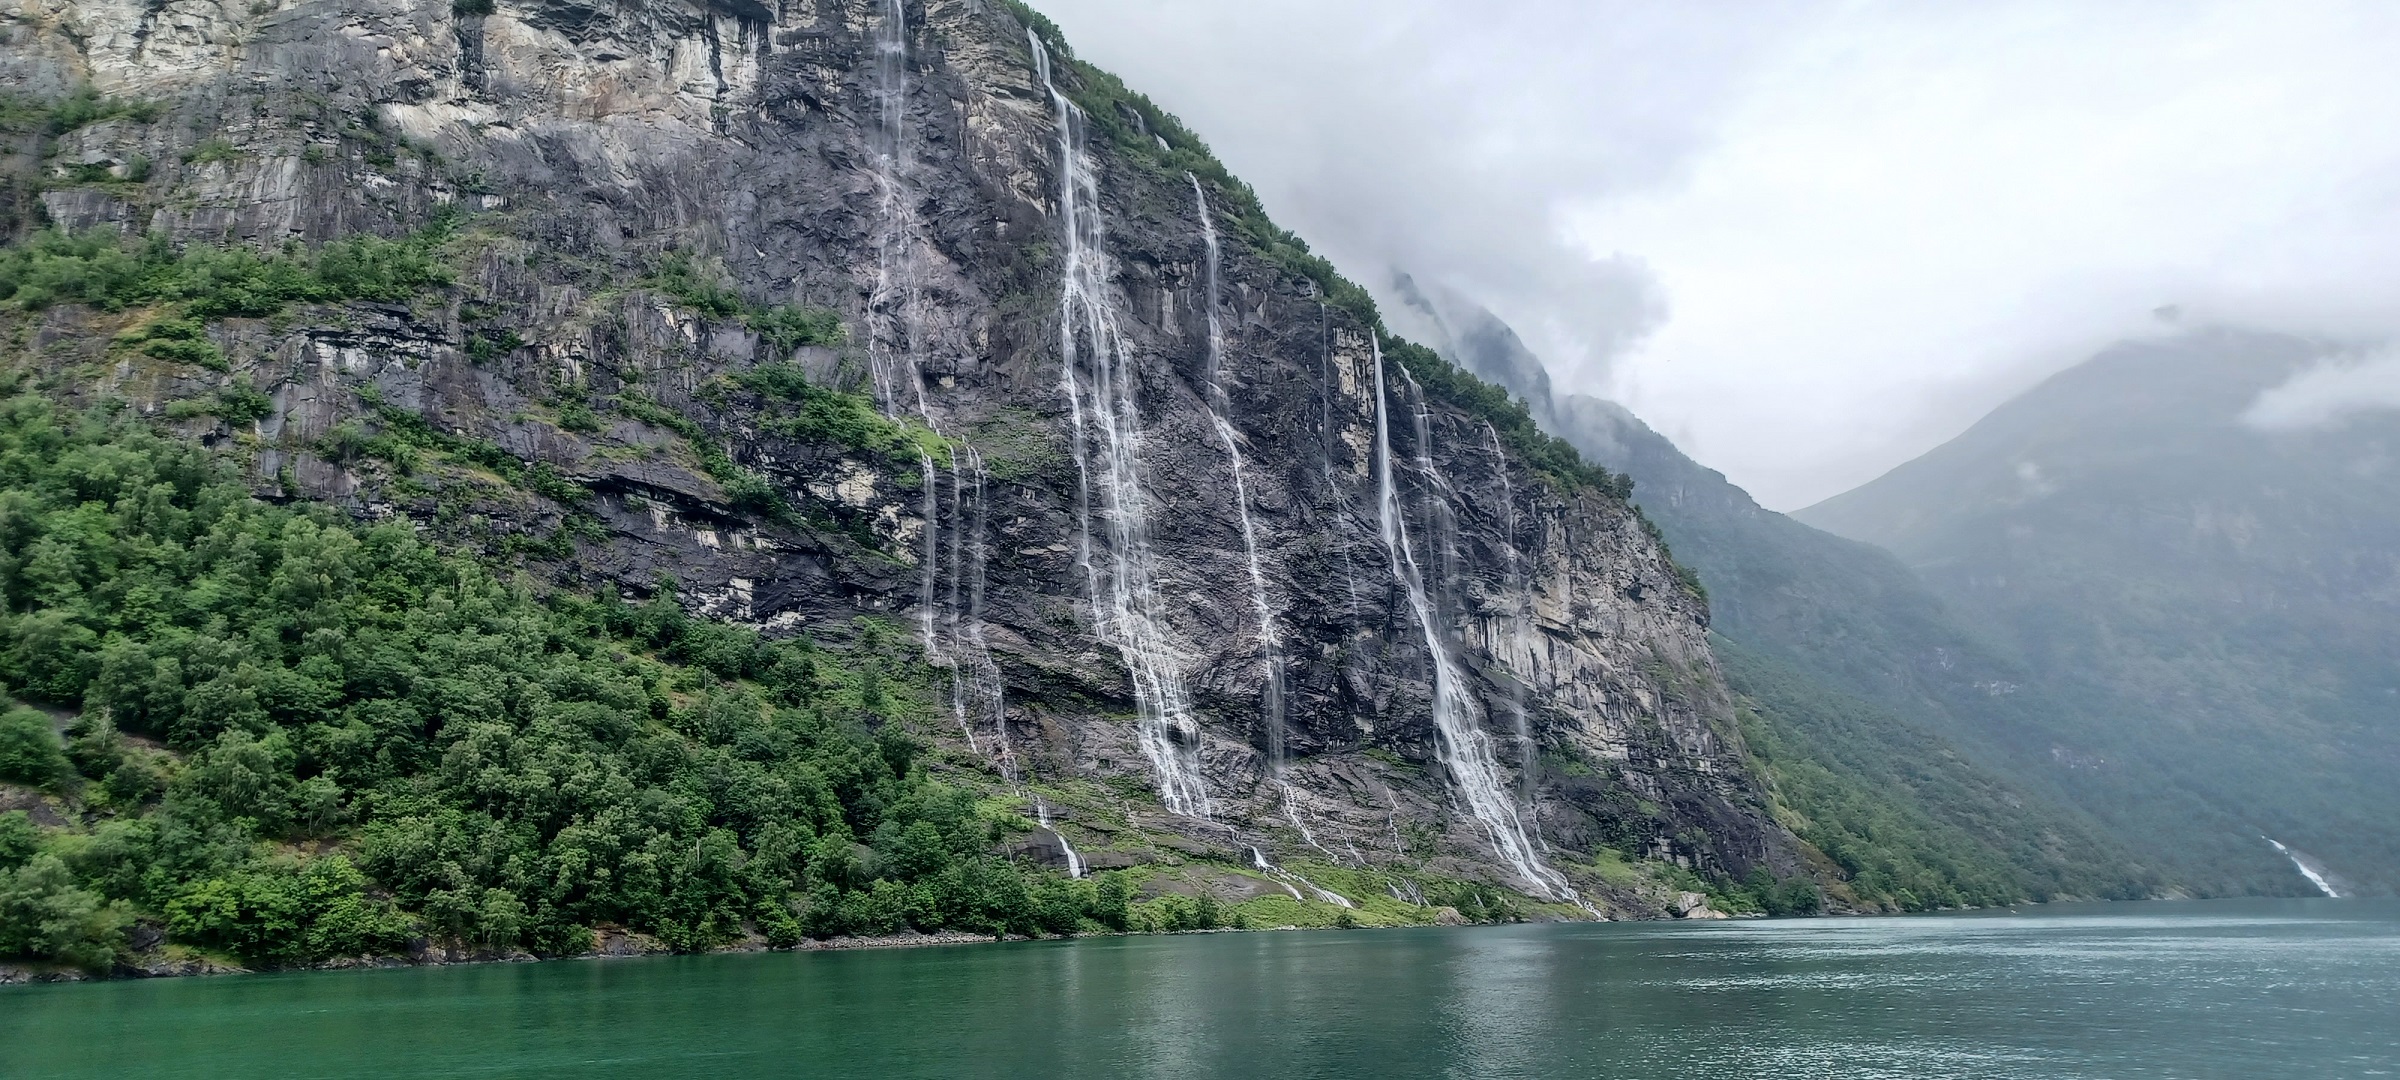 A hét nővés vízesés a Geiranger egyik jellegzetes látnivalója, több száz méter magasból zúdul le a víz fenséges lassúsággal